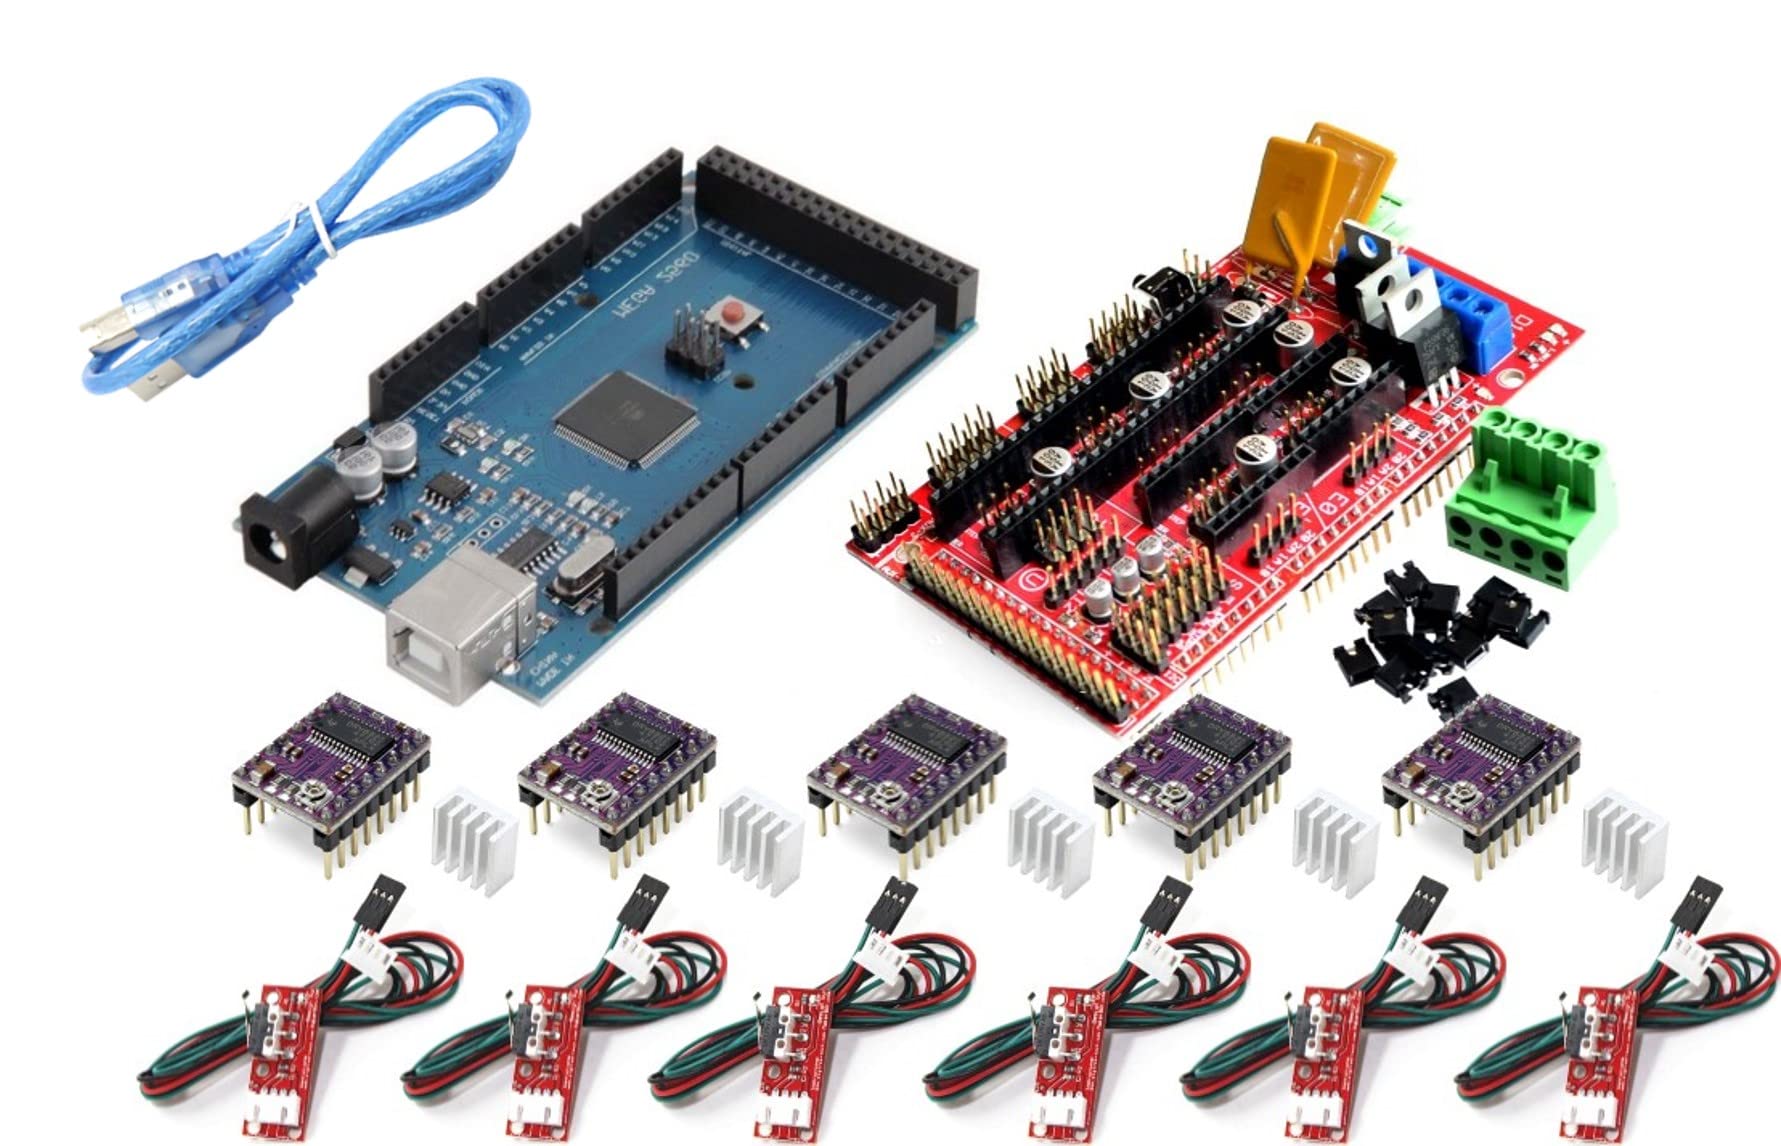 TECNOIOT 3D-Drucker-Kit – Entwicklungsboard + RAMPS 1.4 Controller + 5 Stück DRV8825 Schrittmotormodul + 6 Stück Endstop + Kabel